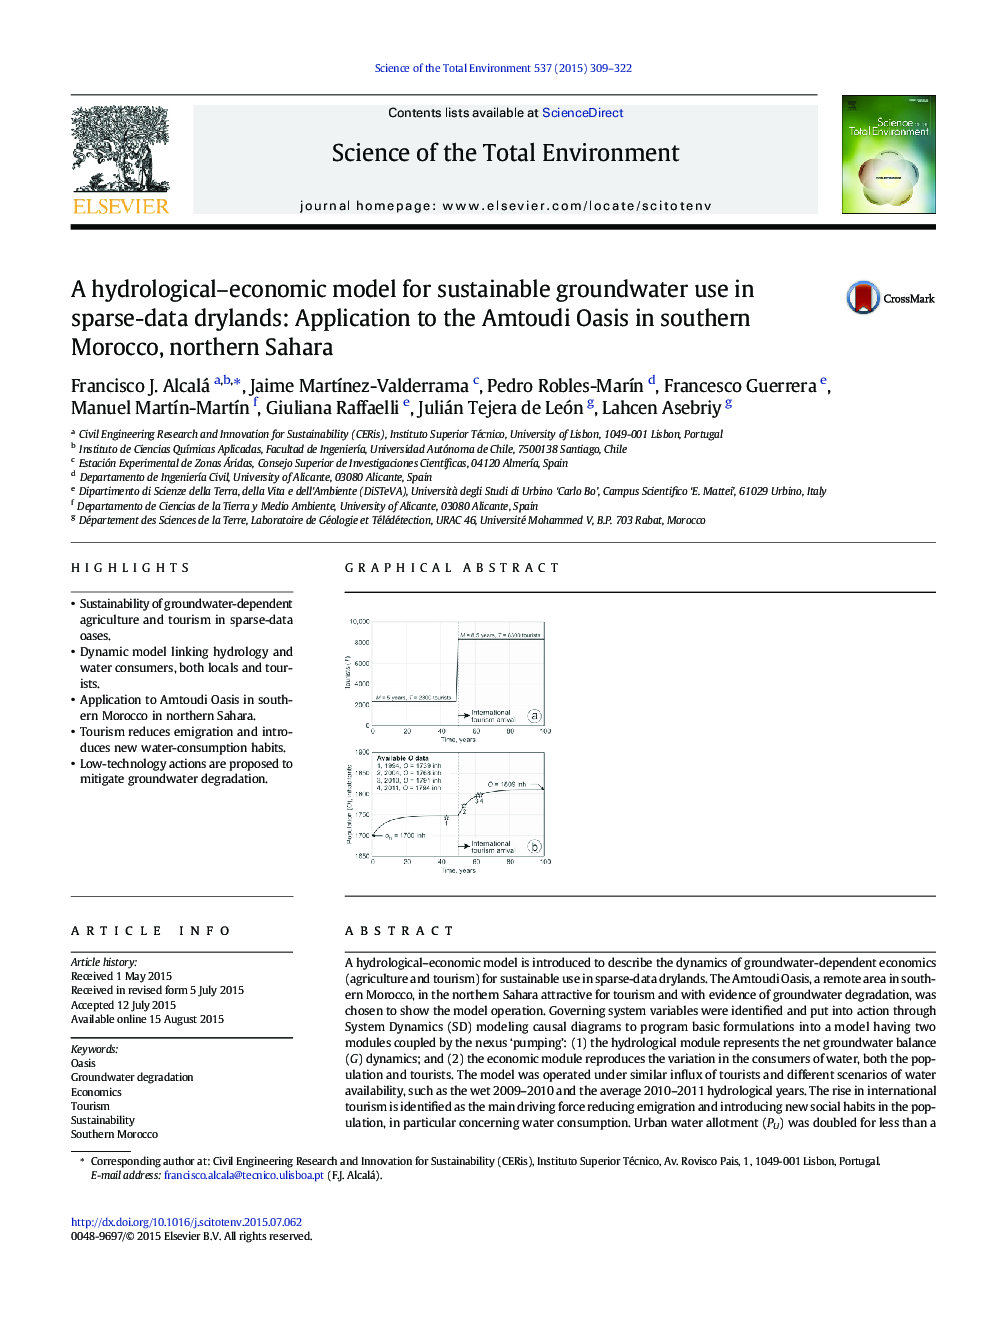 یک مدل هیدرولوژیکی-اقتصادی برای استفاده از آبهای زیرزمینی پایدار در خشکی مناطق کم گزارش: کاربرد در واحه آمودودی در جنوب مراکش، شمال صحرا 